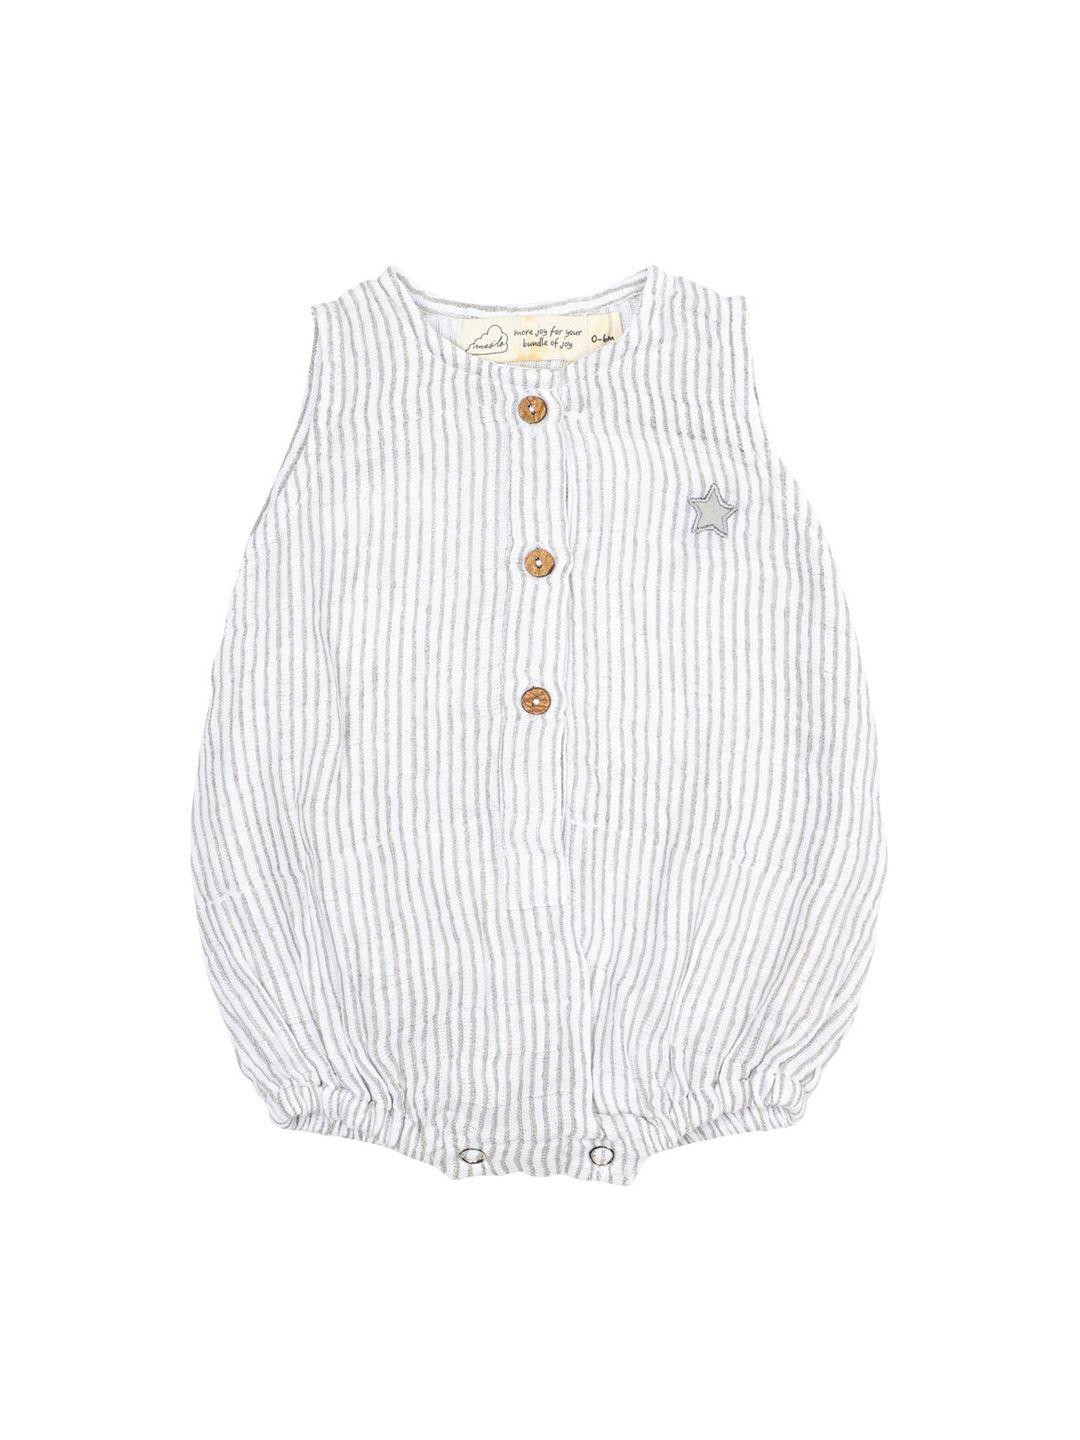 masilo infant kids white & grey striped pure organic cotton romper